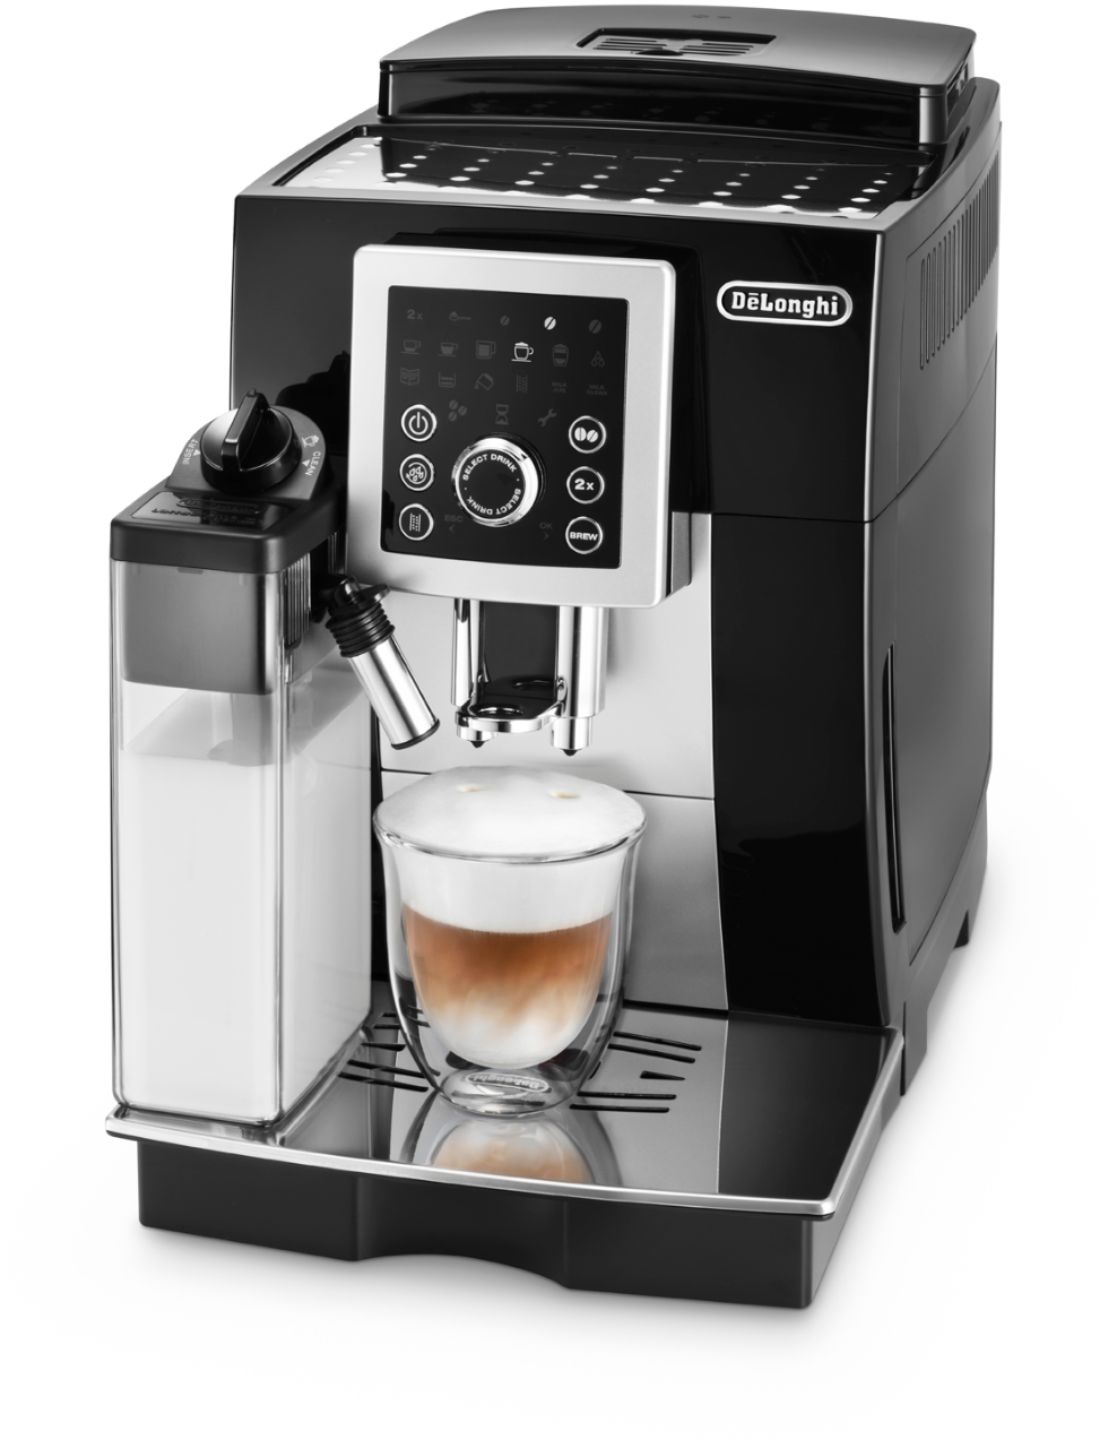  De'Longhi Magnifica S ECAM22.110.B, cafetera con espumador de  leche, máquina automática de café expreso con 2 recetas de bebidas de café  caliente, panel de control suave al tacto, 1450 W, color